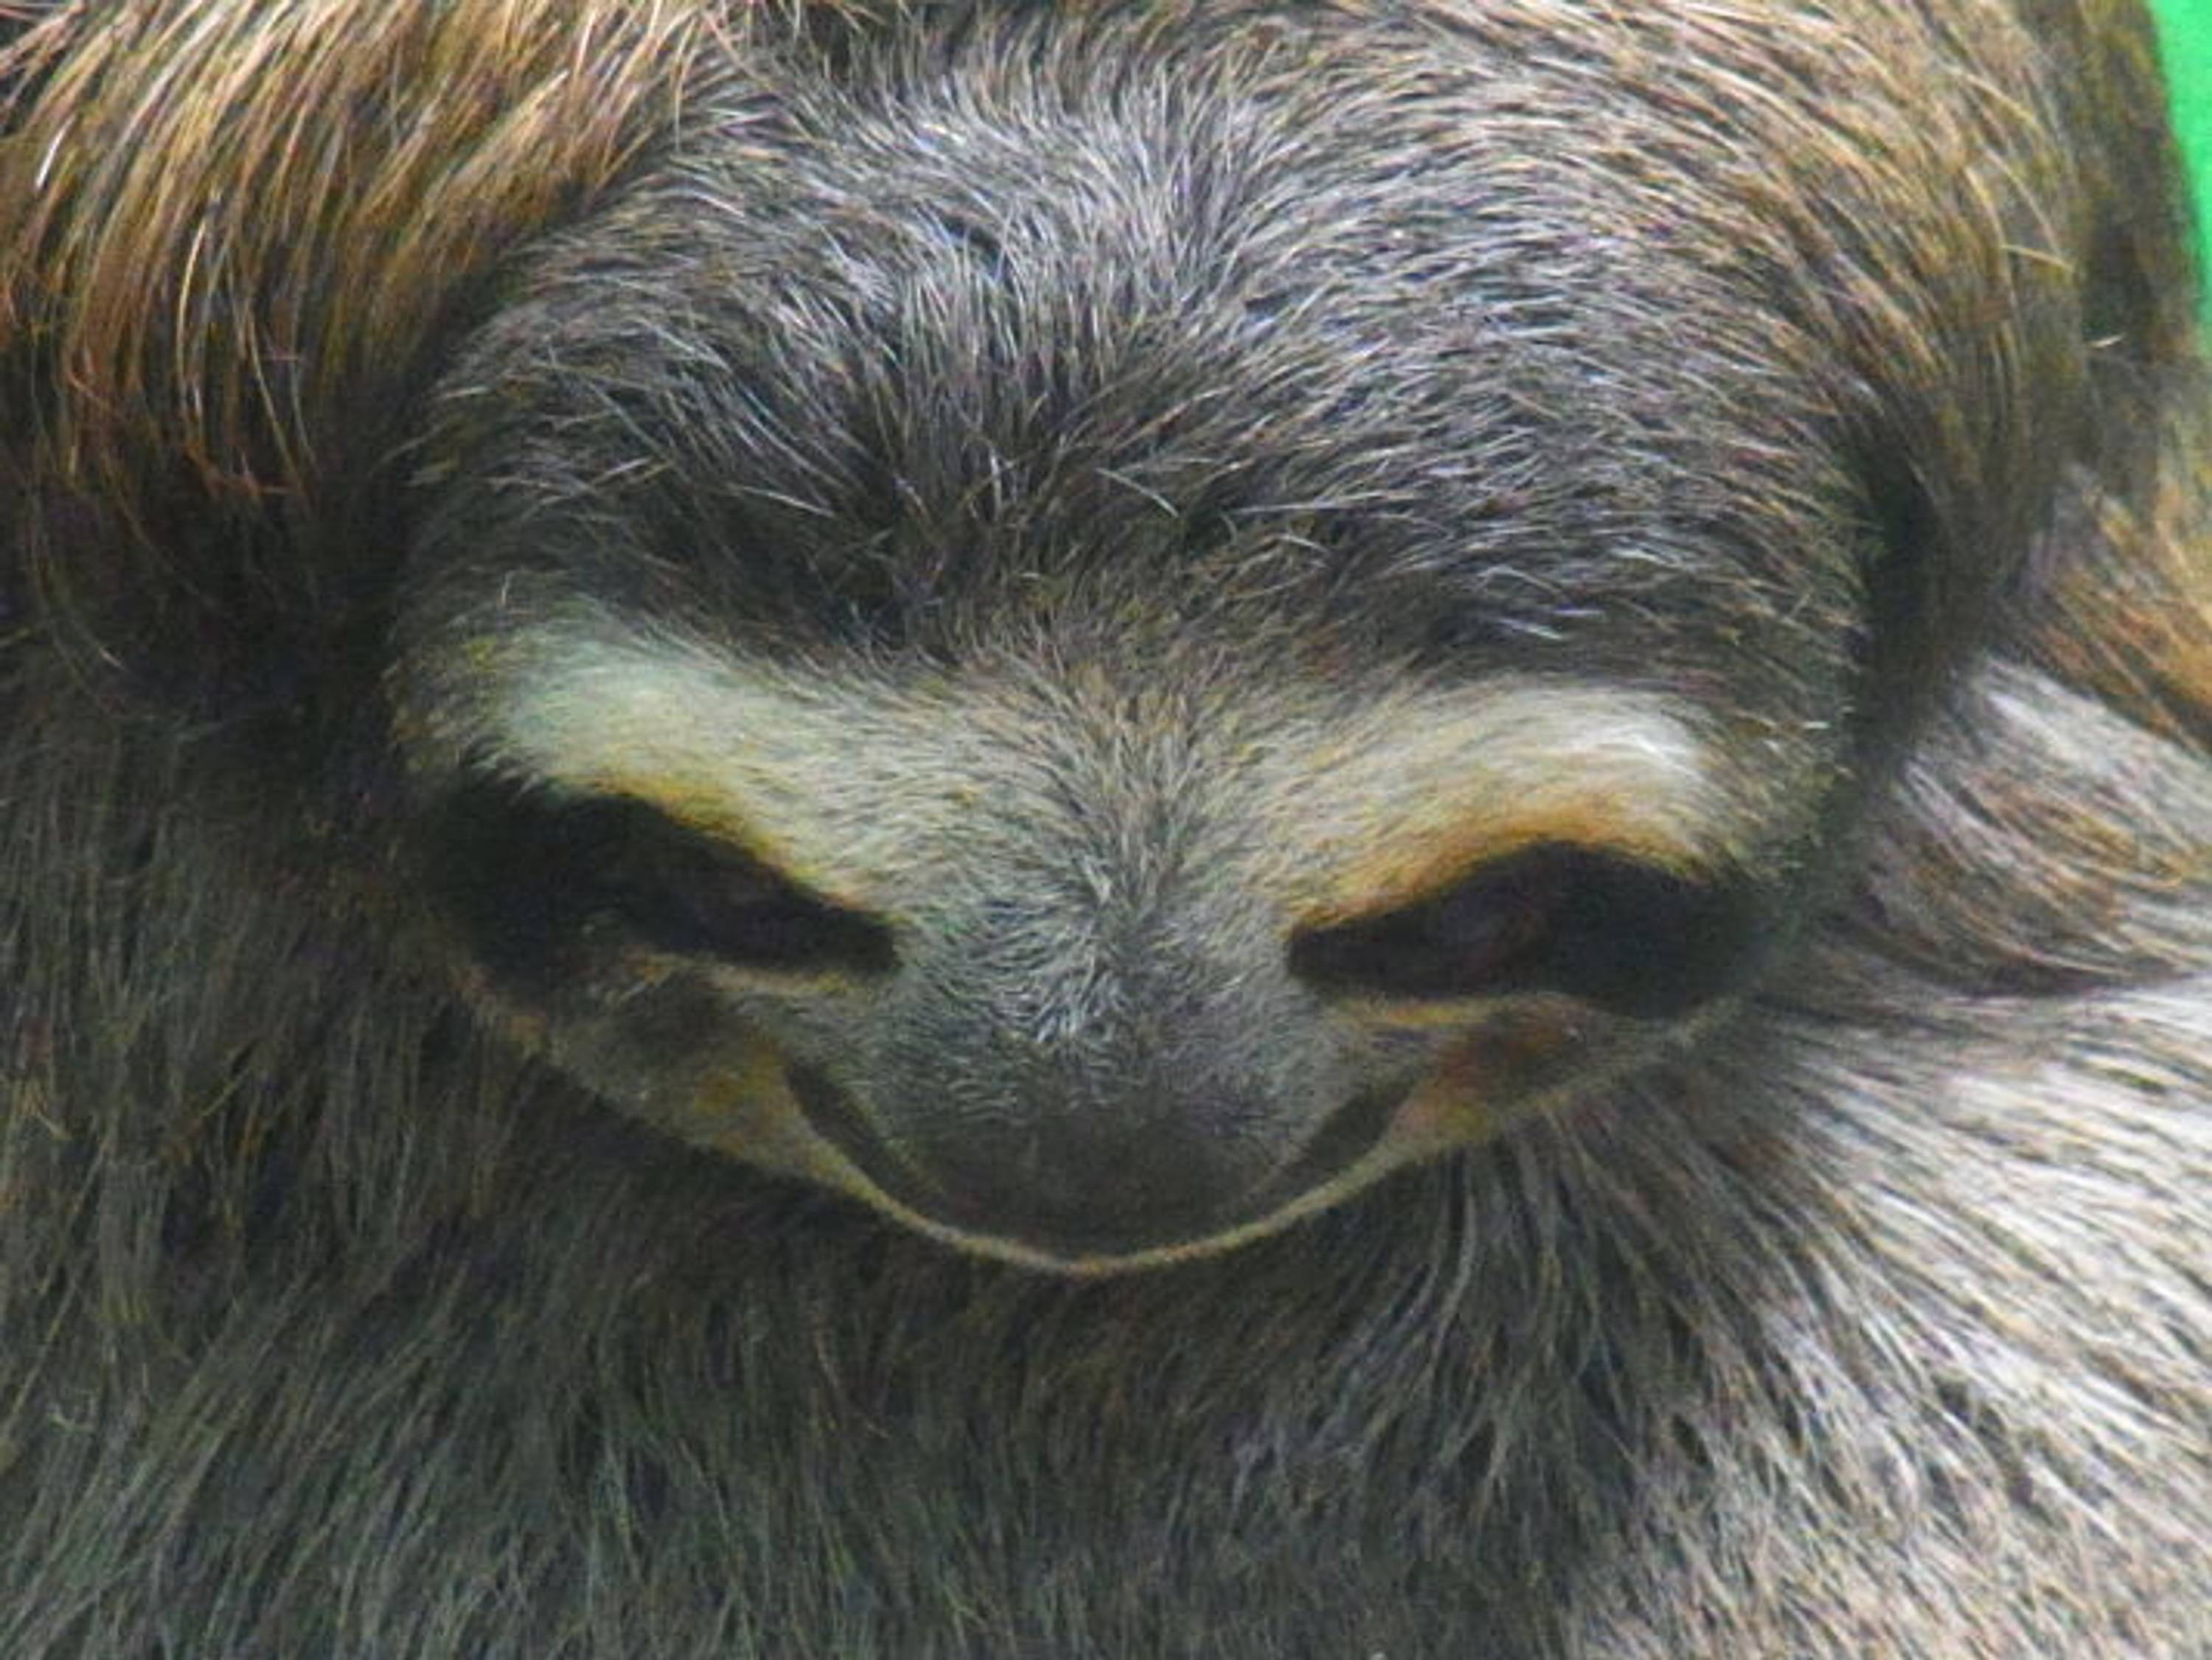 Giant Sloth © Chris Redston